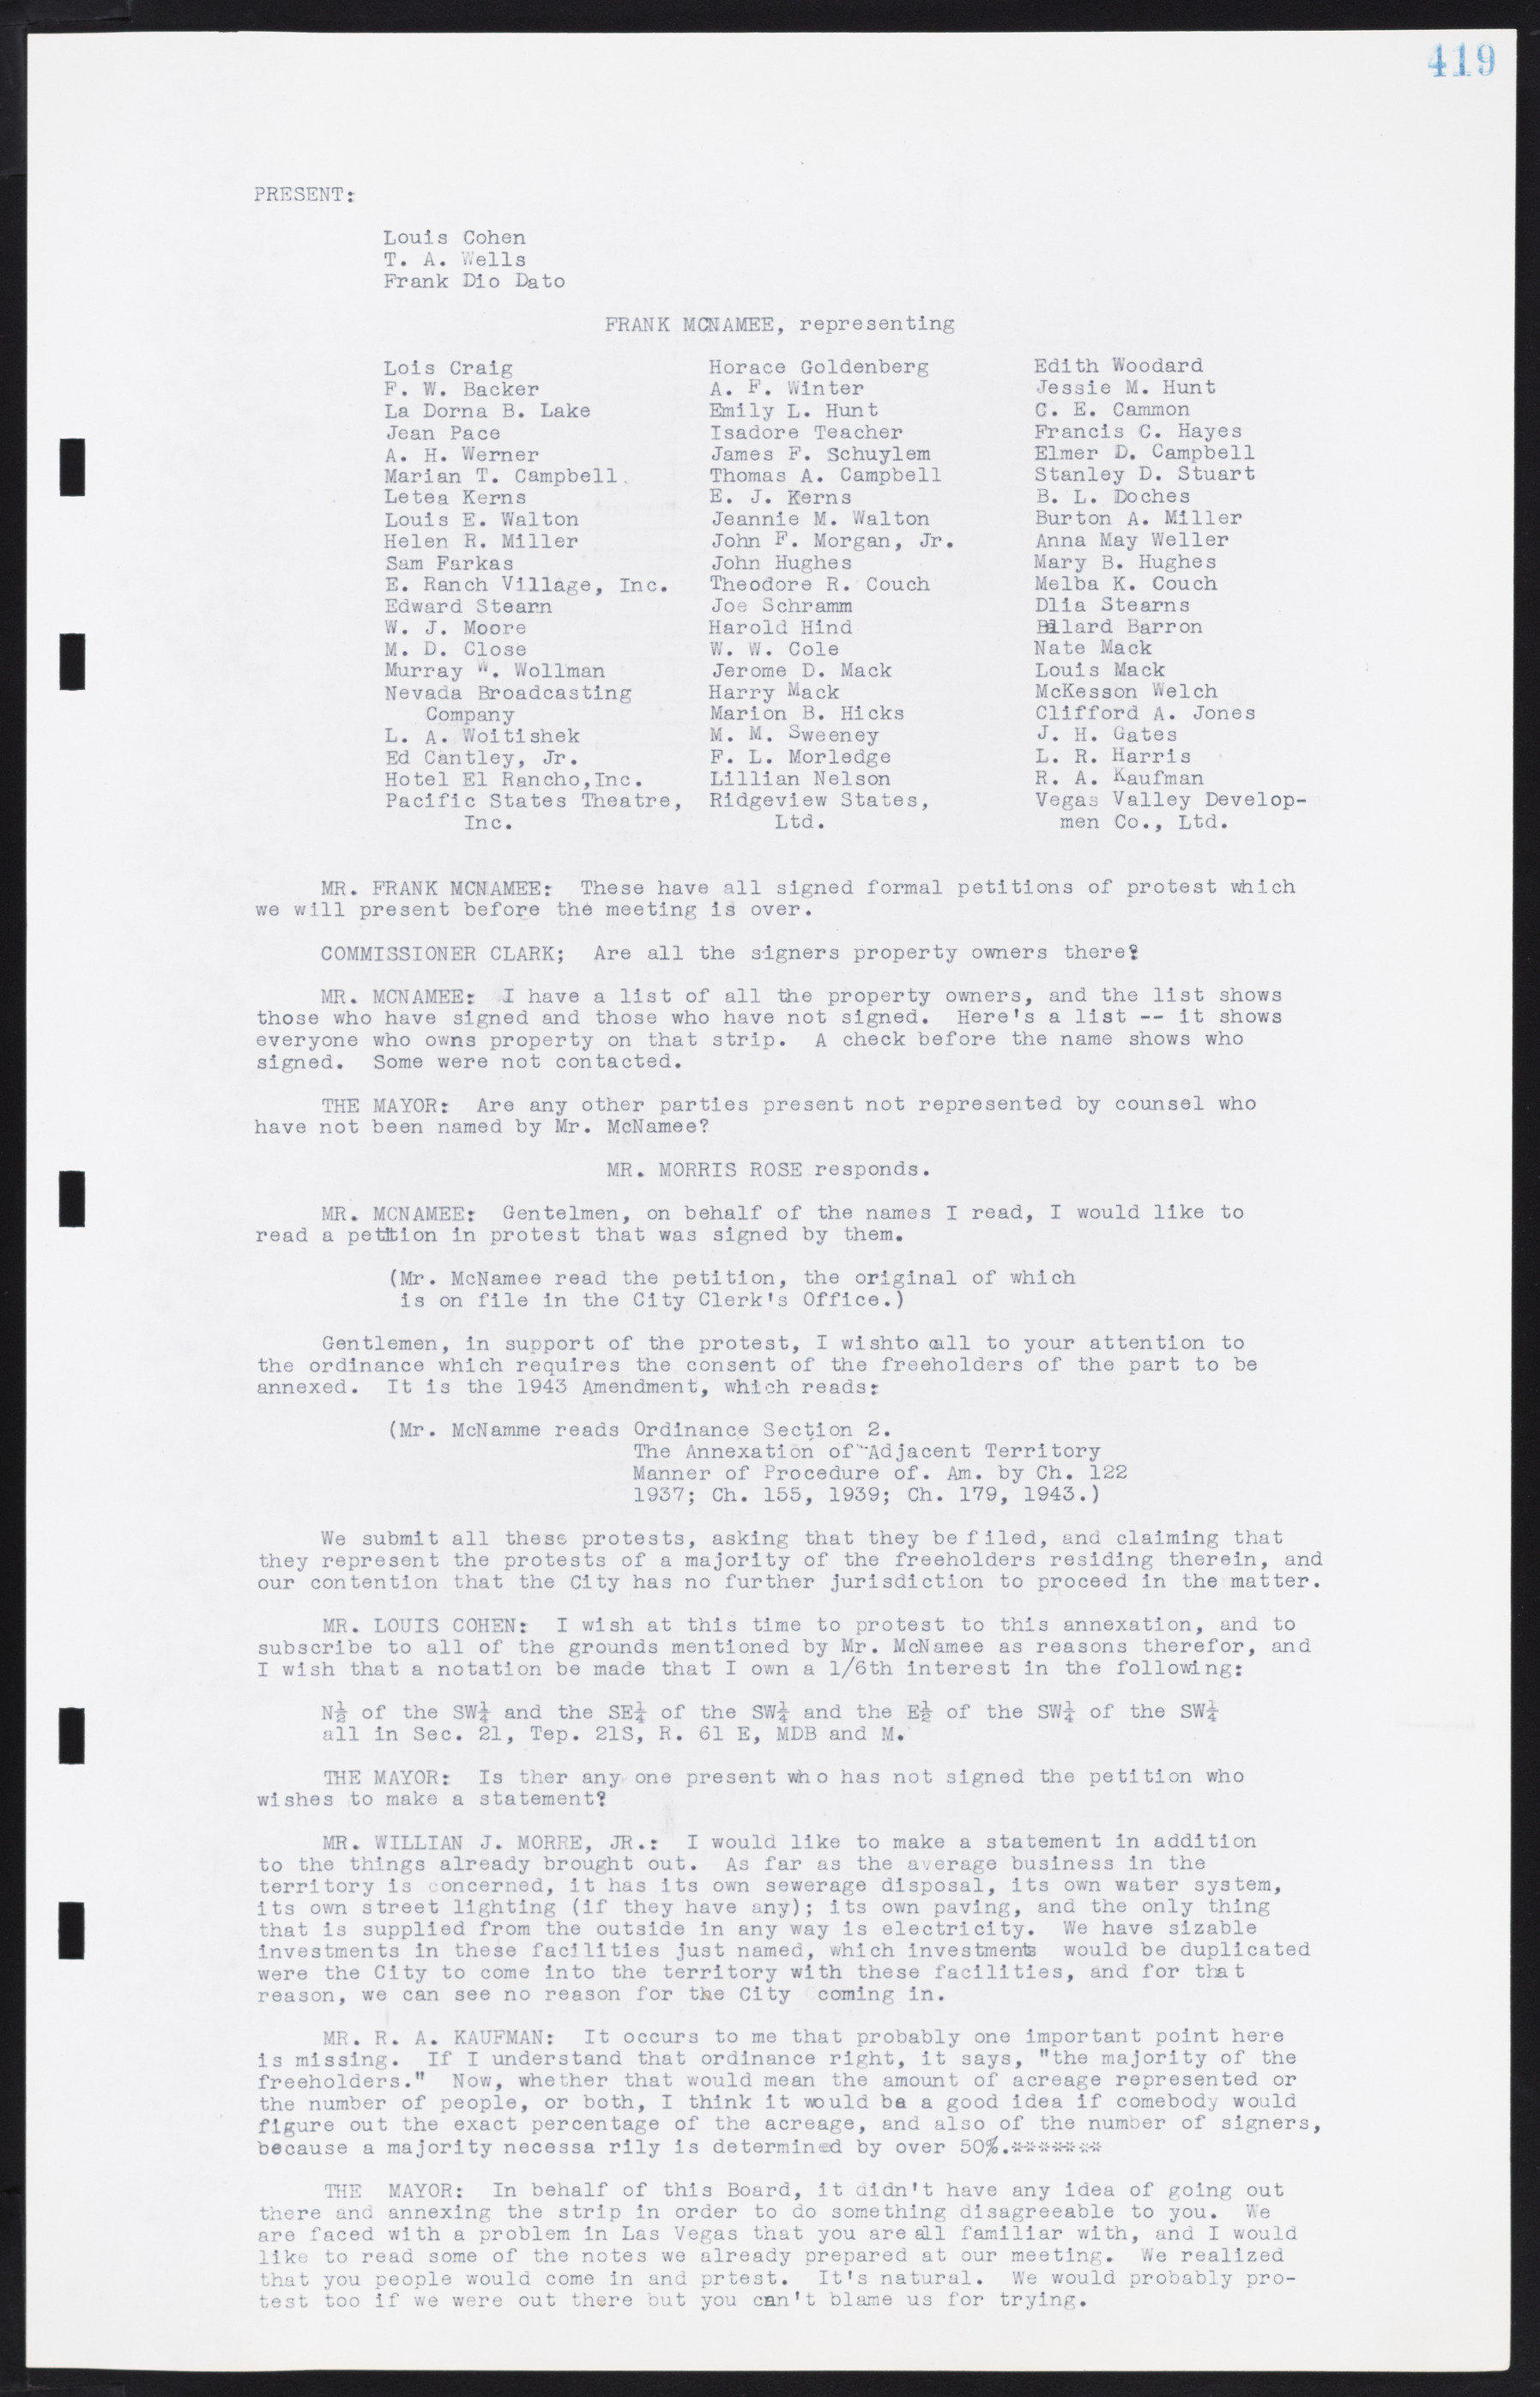 Las Vegas City Commission Minutes, August 11, 1942 to December 30, 1946, lvc000005-447